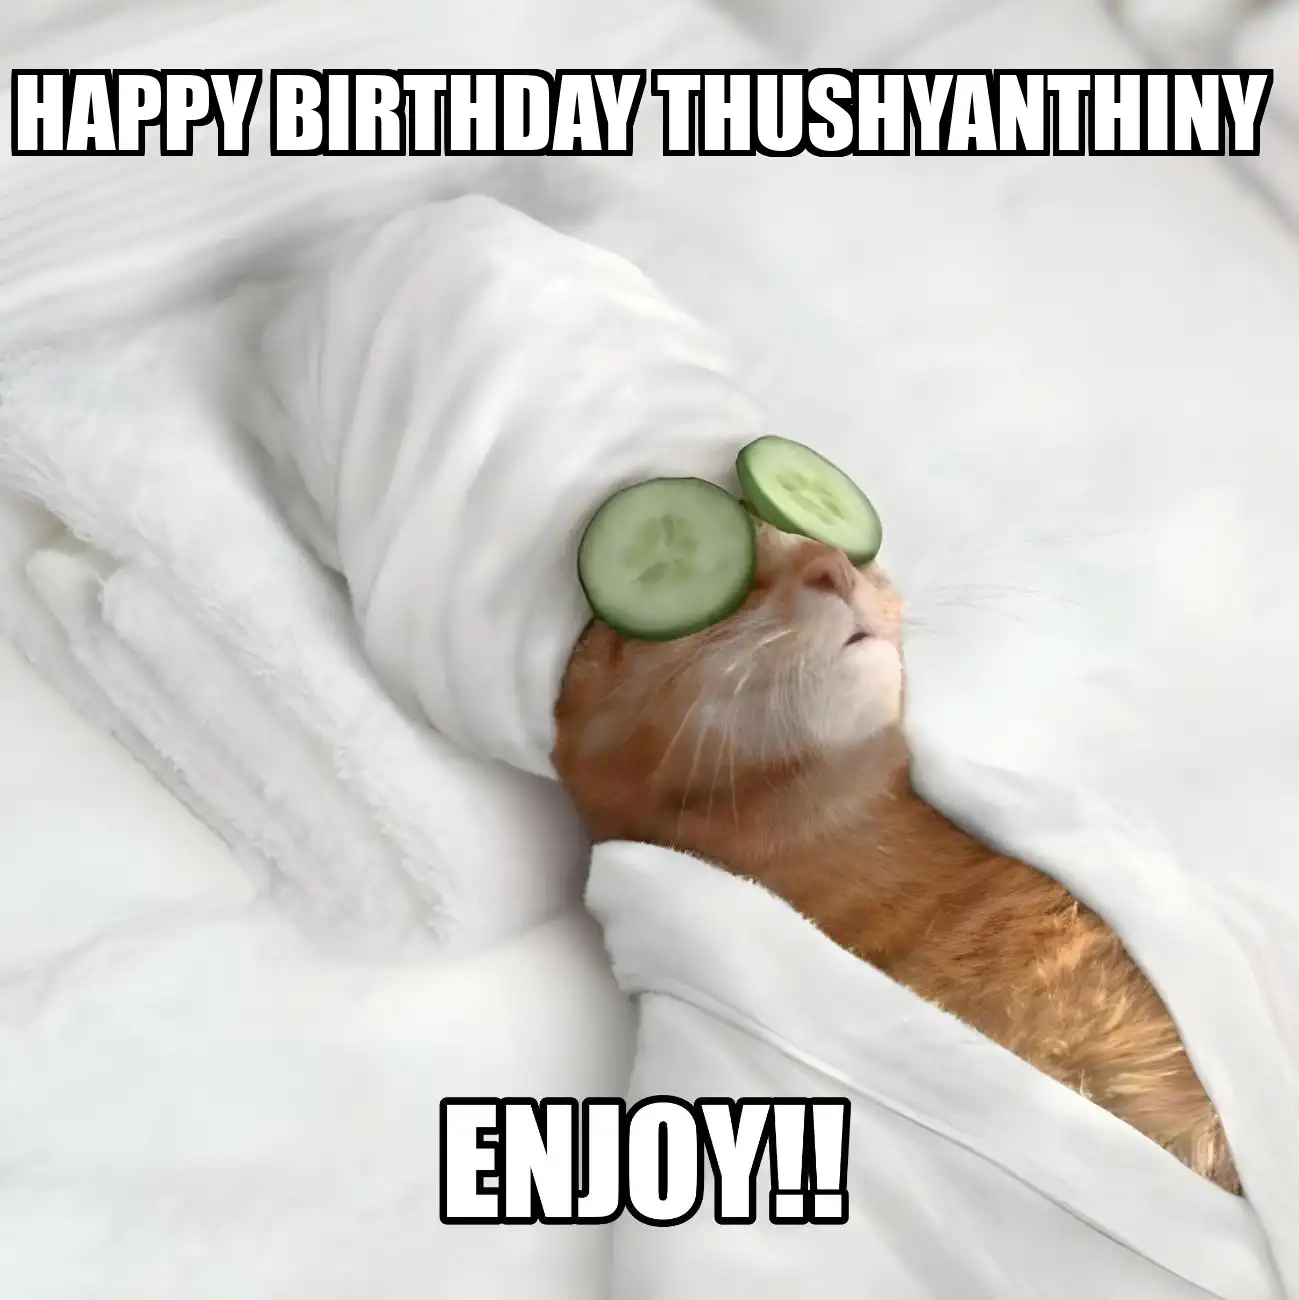 Happy Birthday Thushyanthiny Enjoy Cat Meme